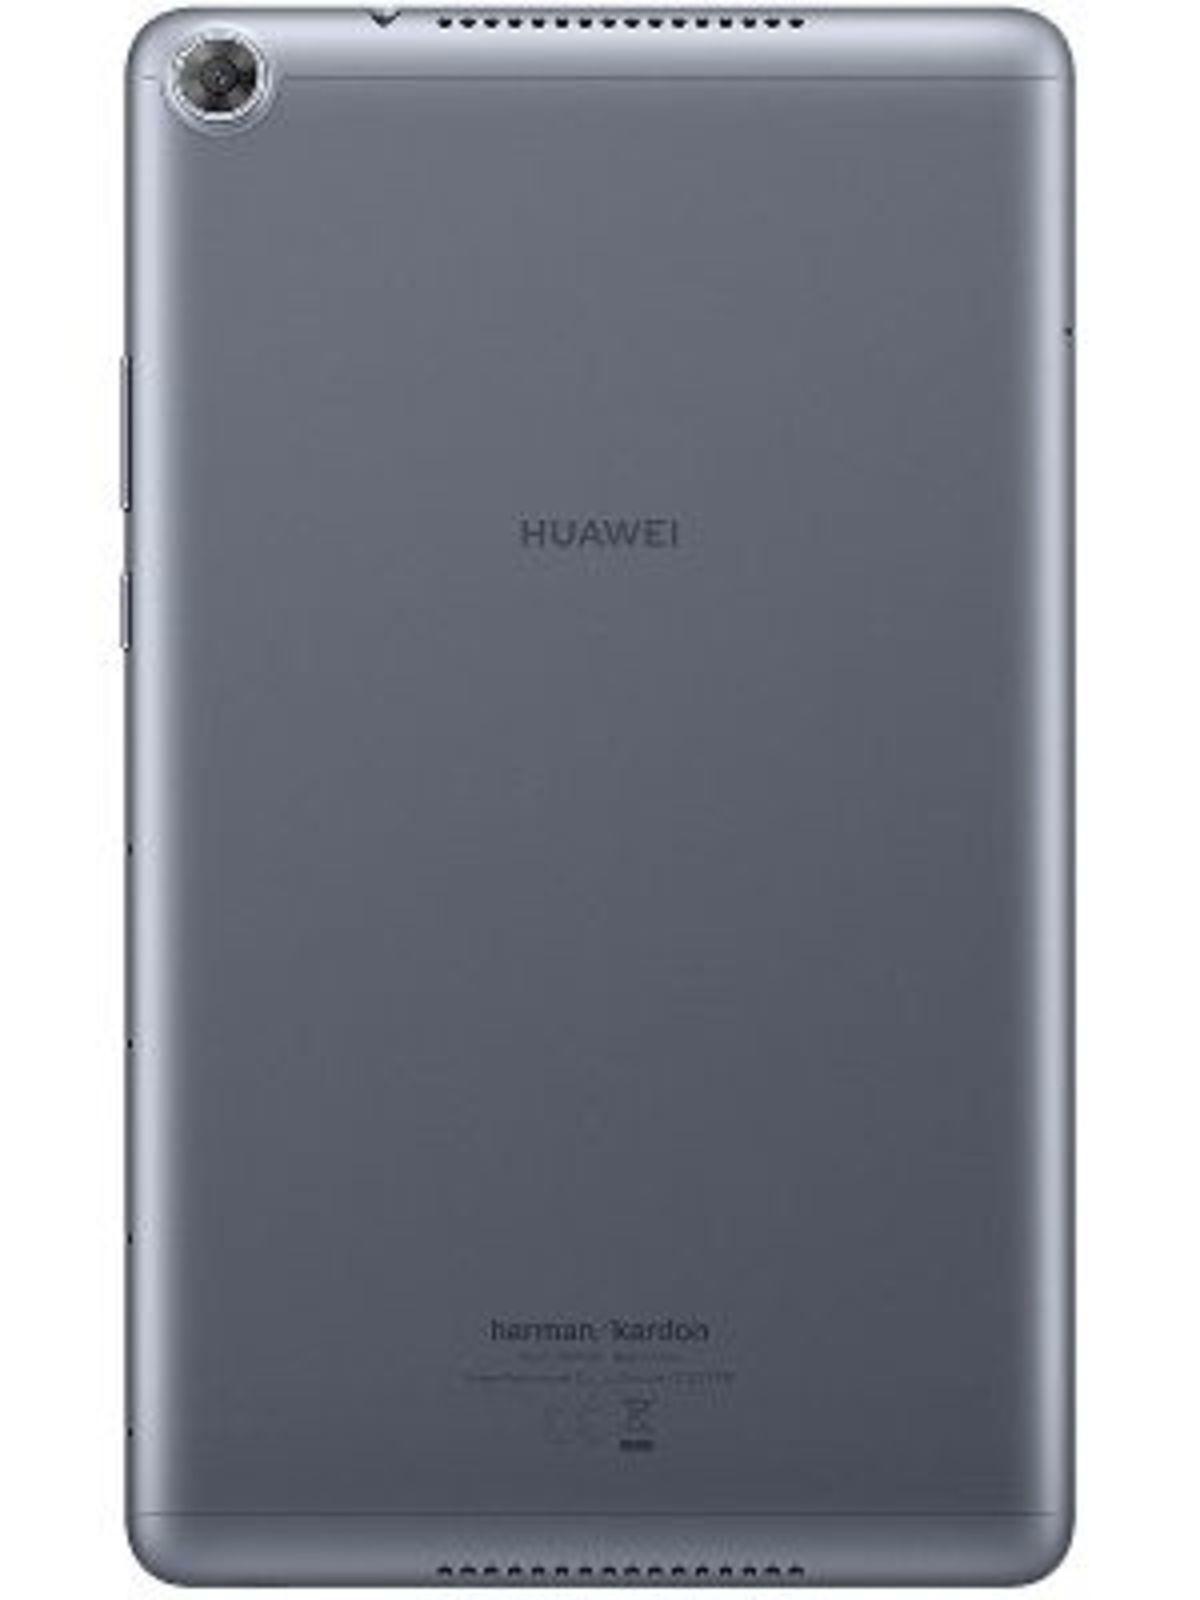 Huawei MediaPad M5 Lite 8.0